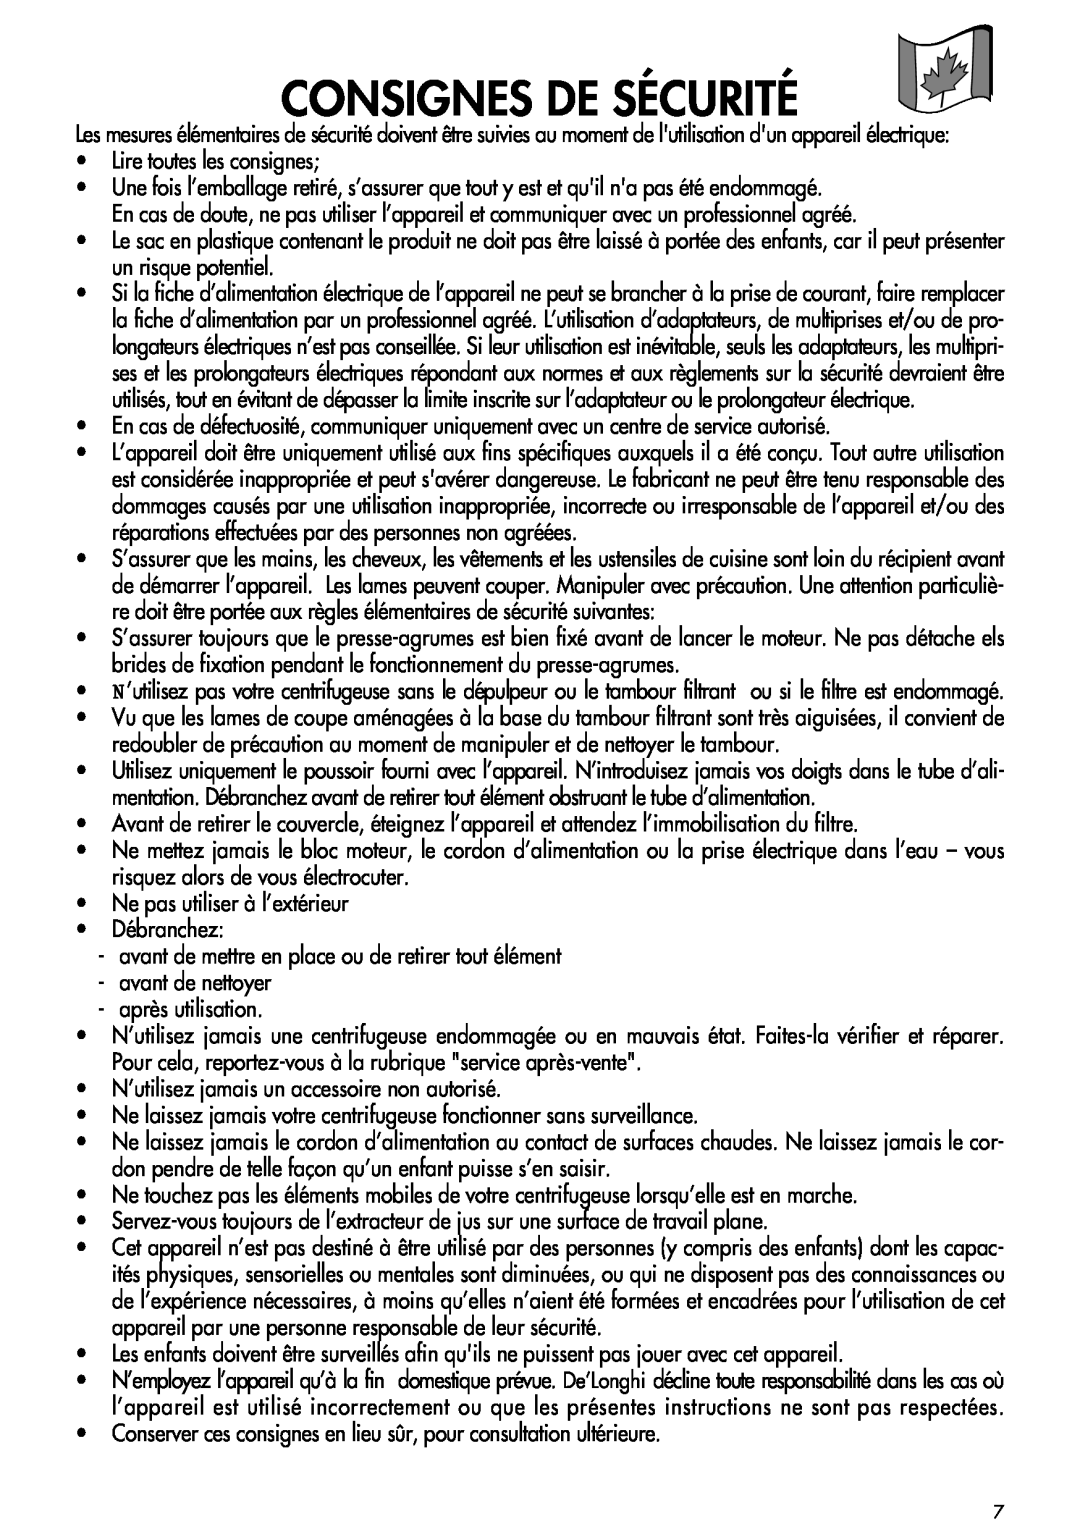 DeLonghi DJE950 manual Consignes De Sécurité 